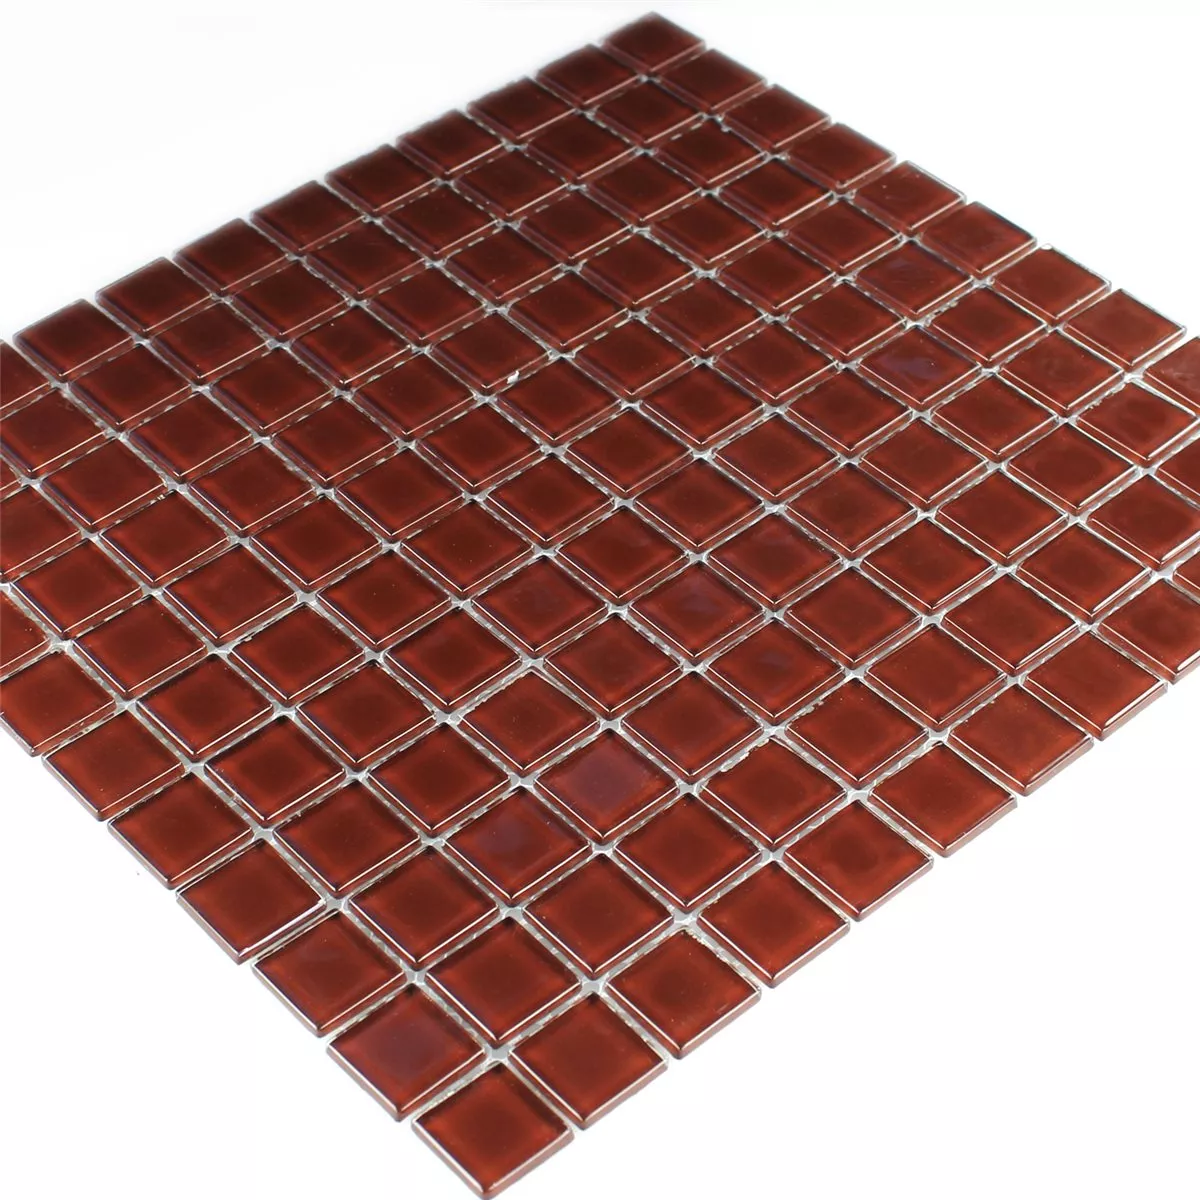 Skleněná Mozaika Dlaždice 25x25x4mm Tmavě Hnědá. Uni